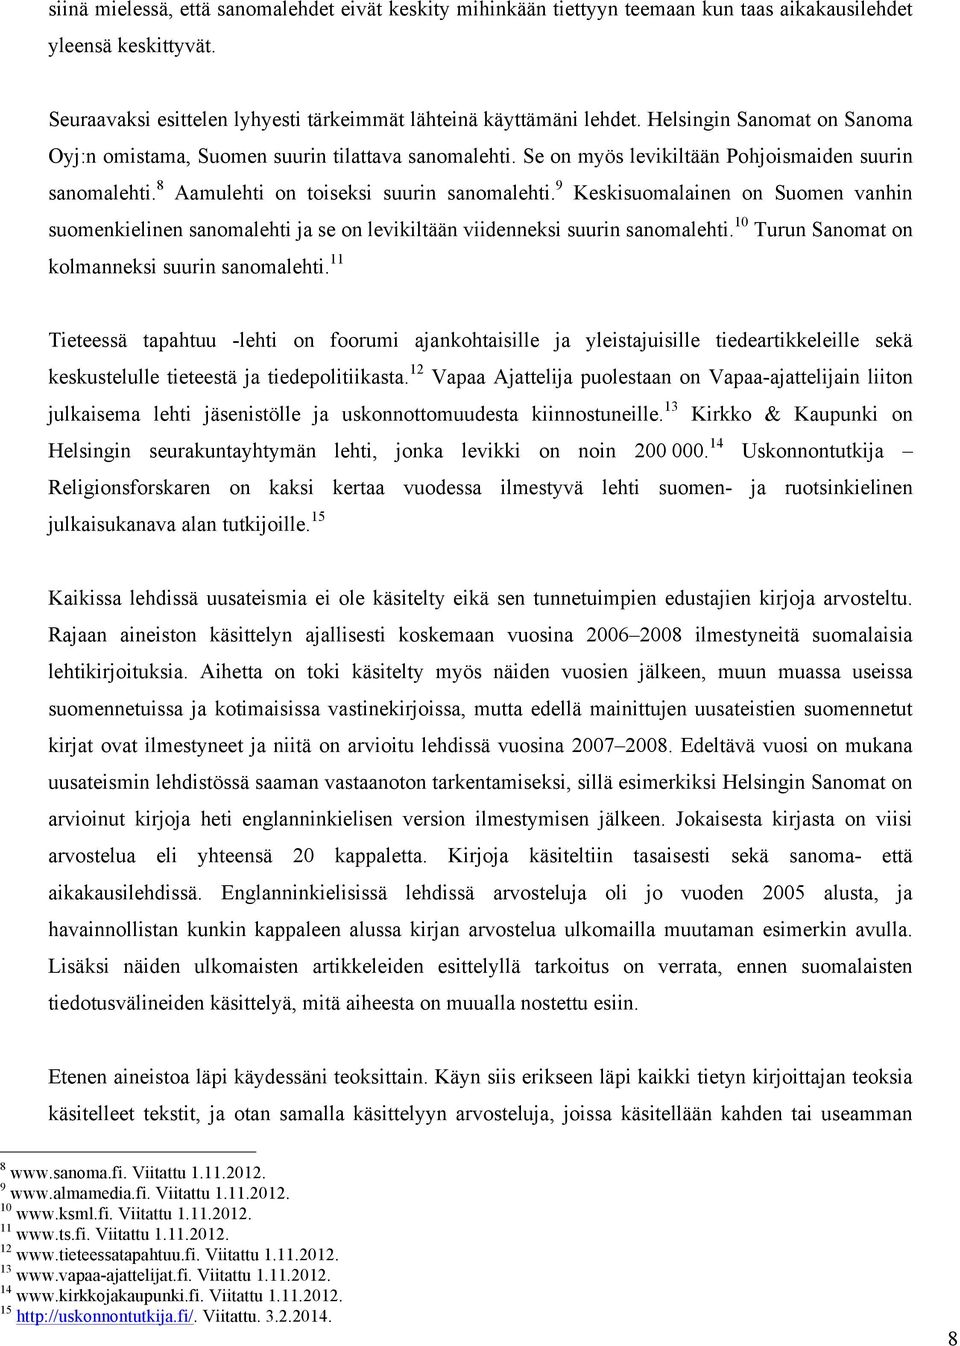 9 Keskisuomalainen on Suomen vanhin suomenkielinen sanomalehti ja se on levikiltään viidenneksi suurin sanomalehti. 10 Turun Sanomat on kolmanneksi suurin sanomalehti.